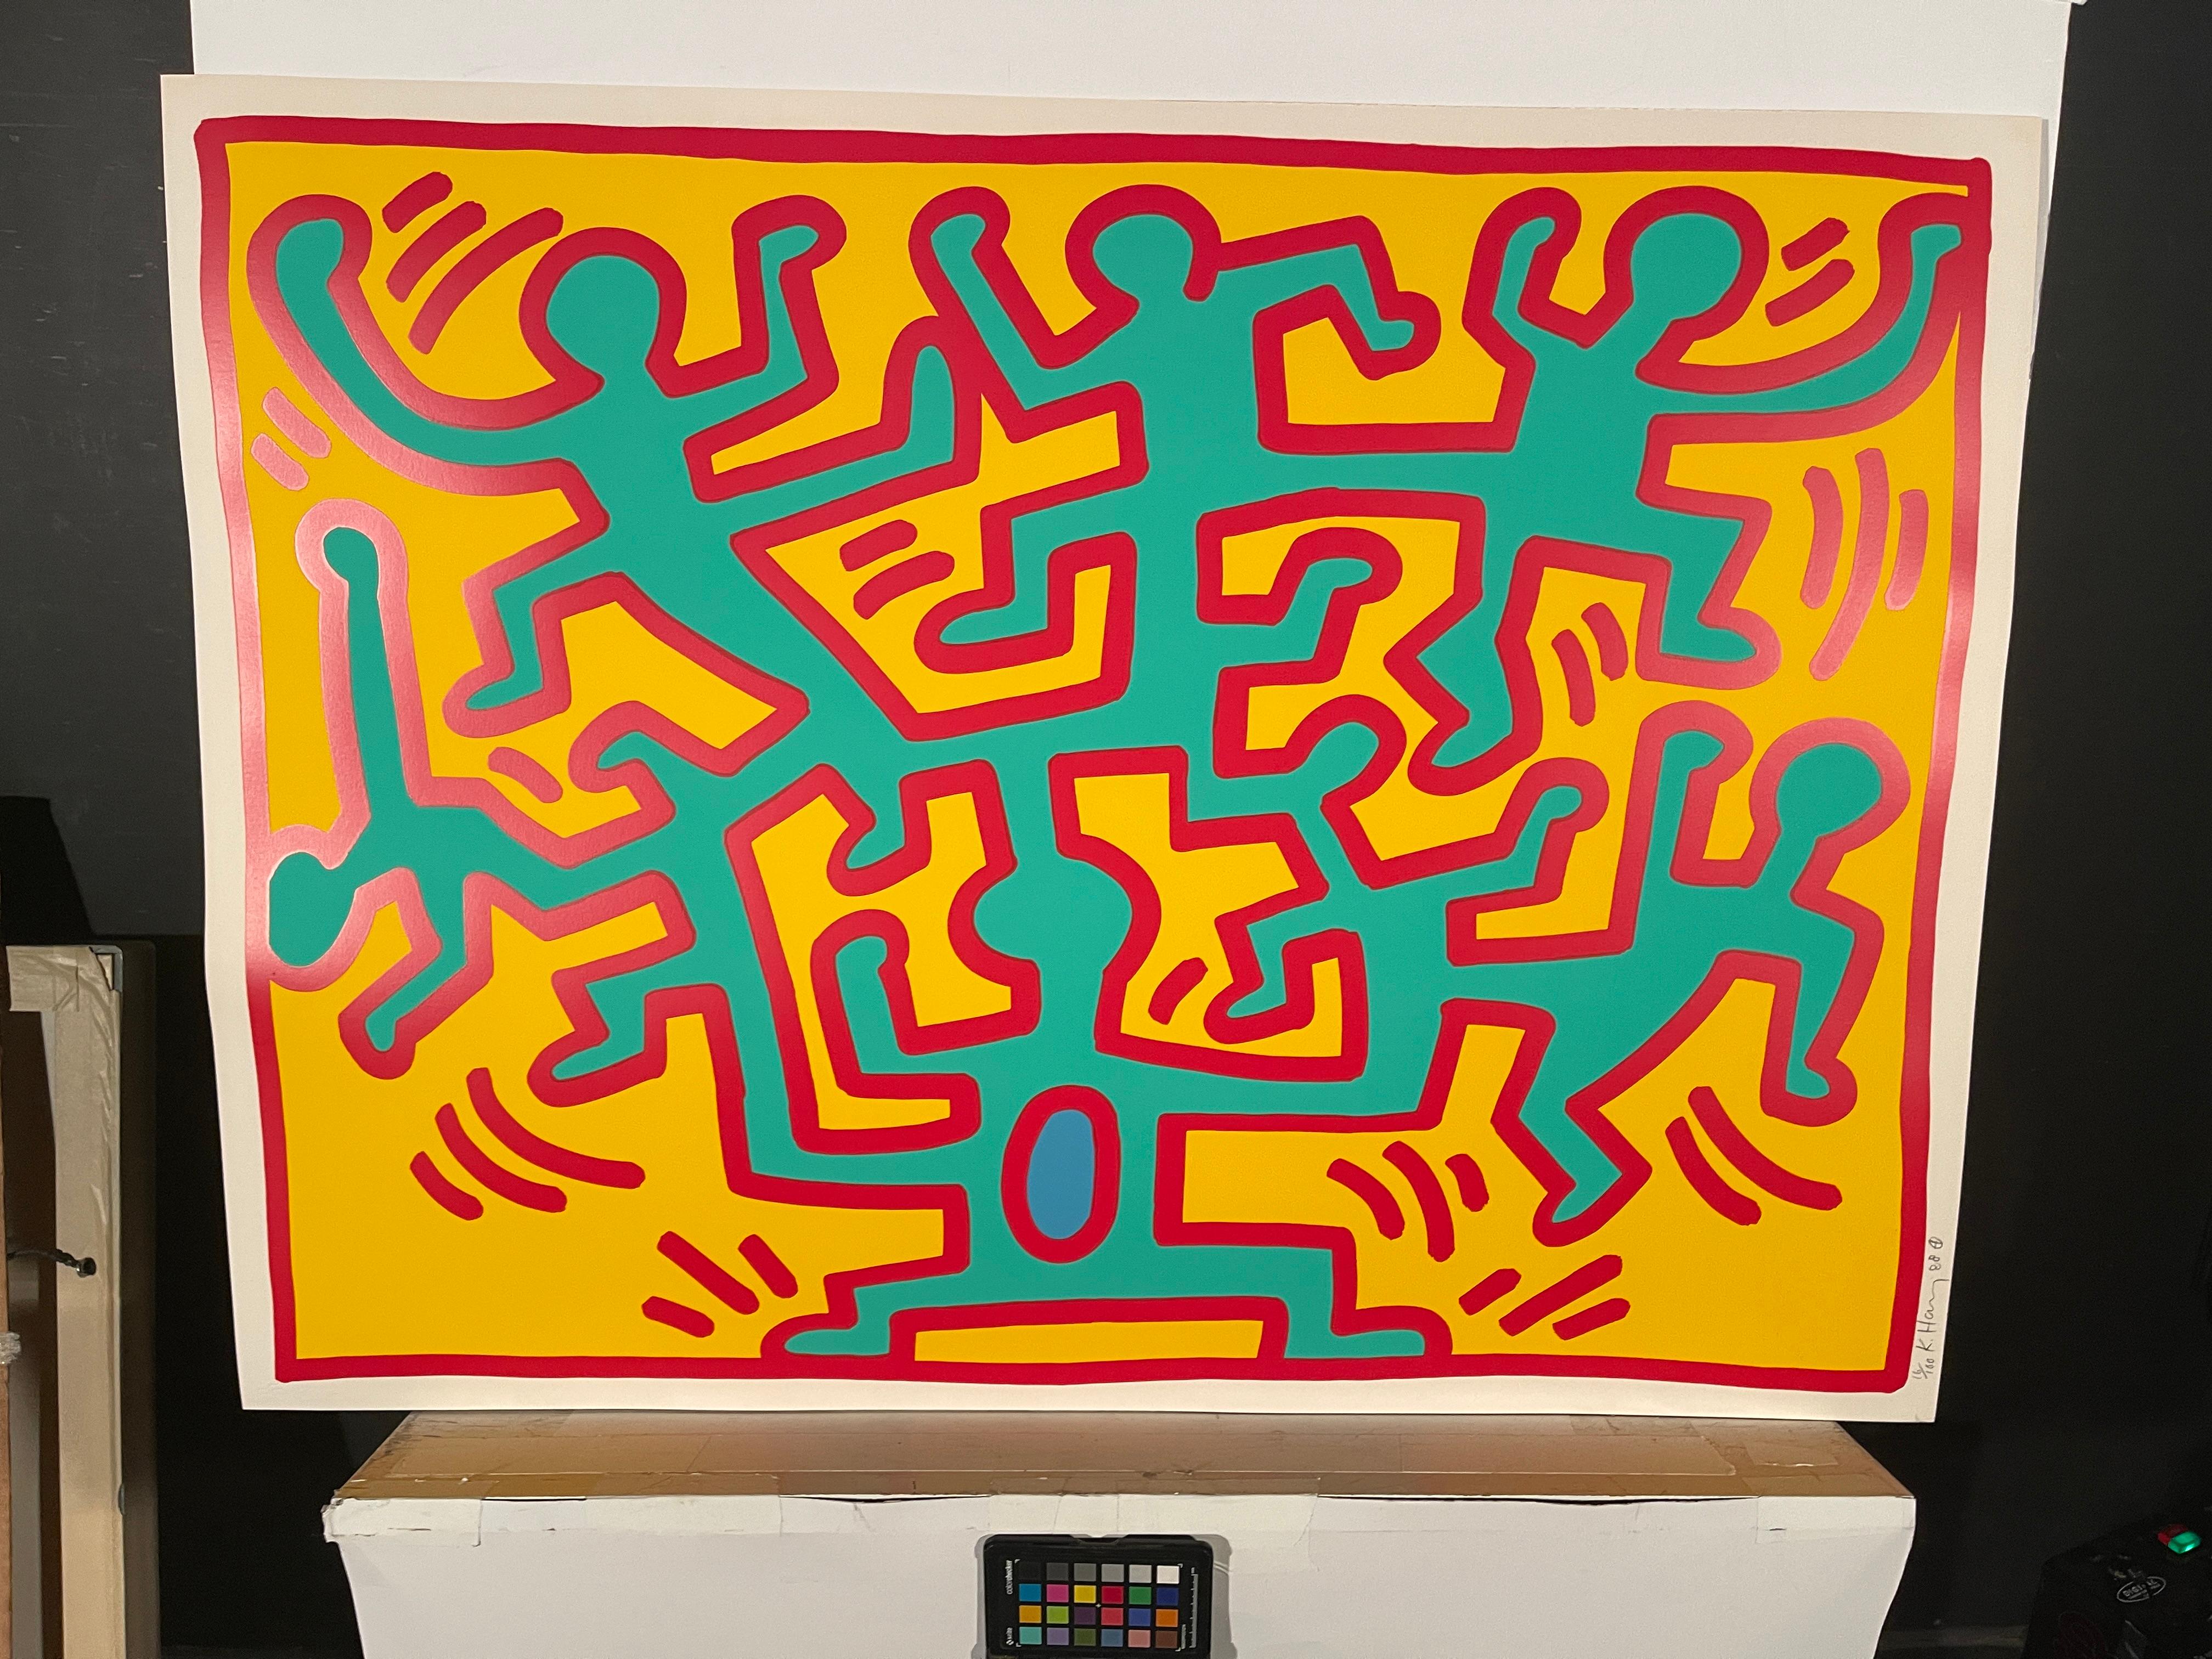 Wachsen 2, 1988 – Print von Keith Haring